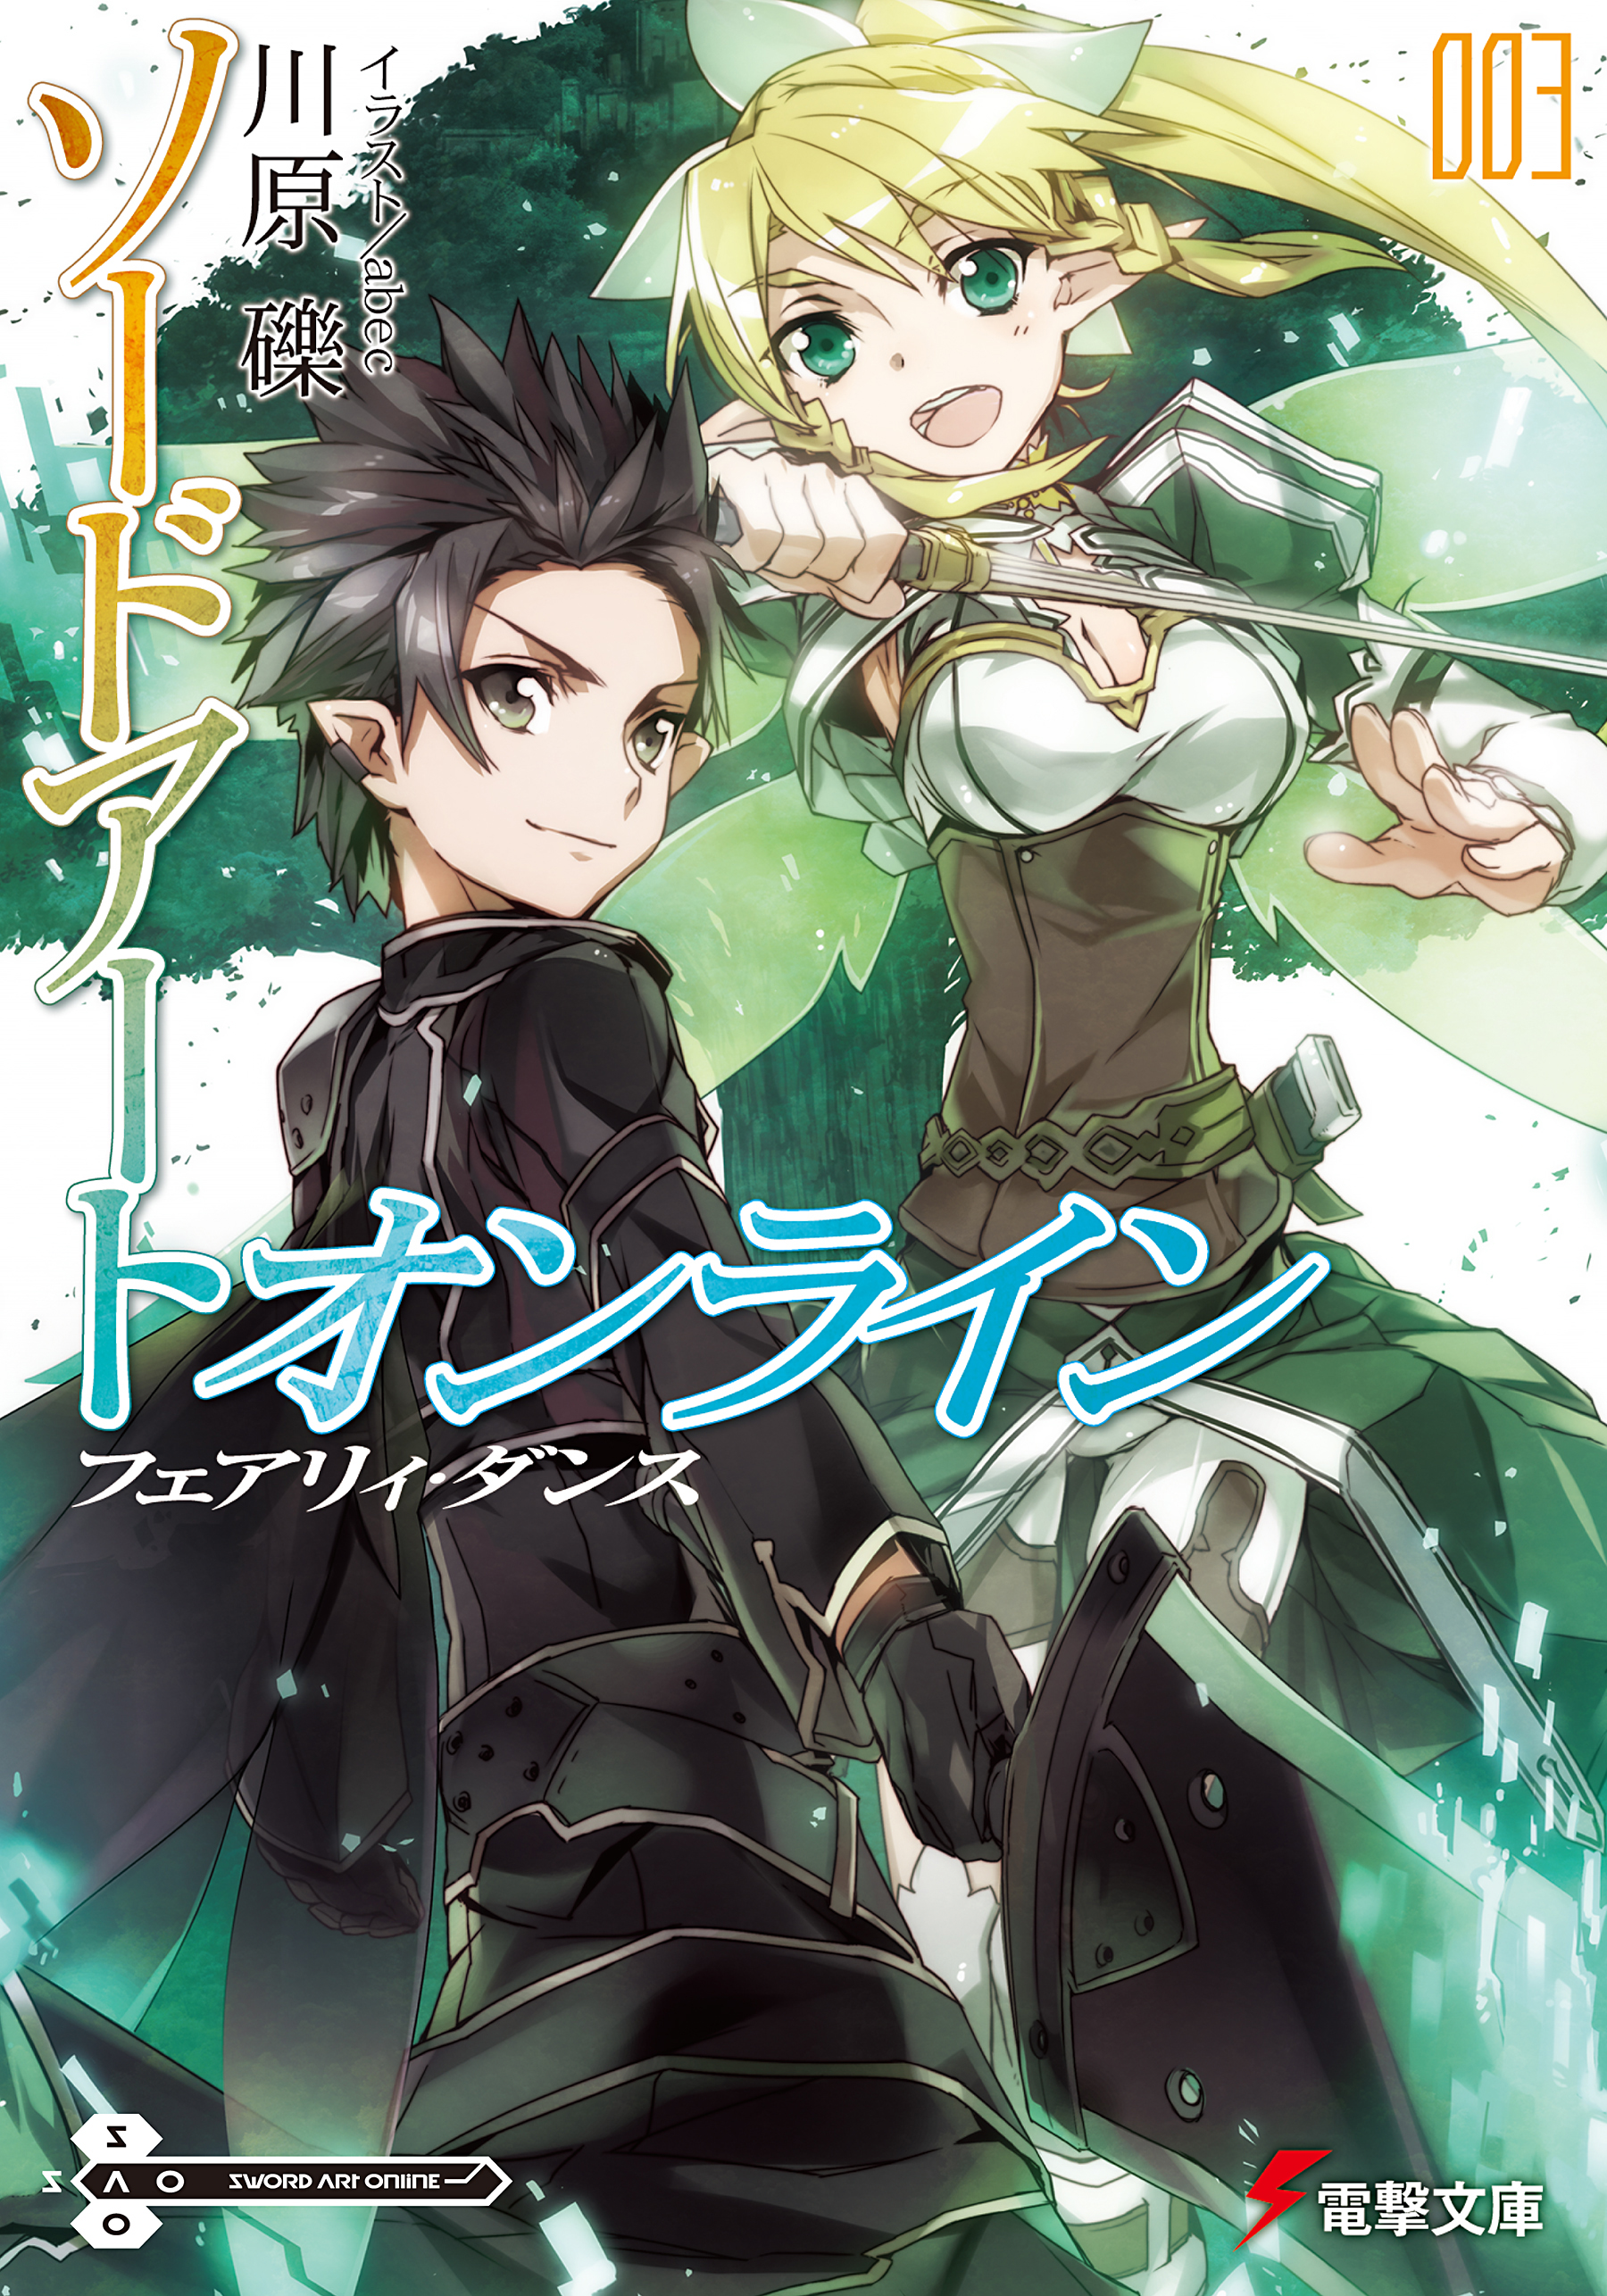 Sword Art Online Novel 03 PDF